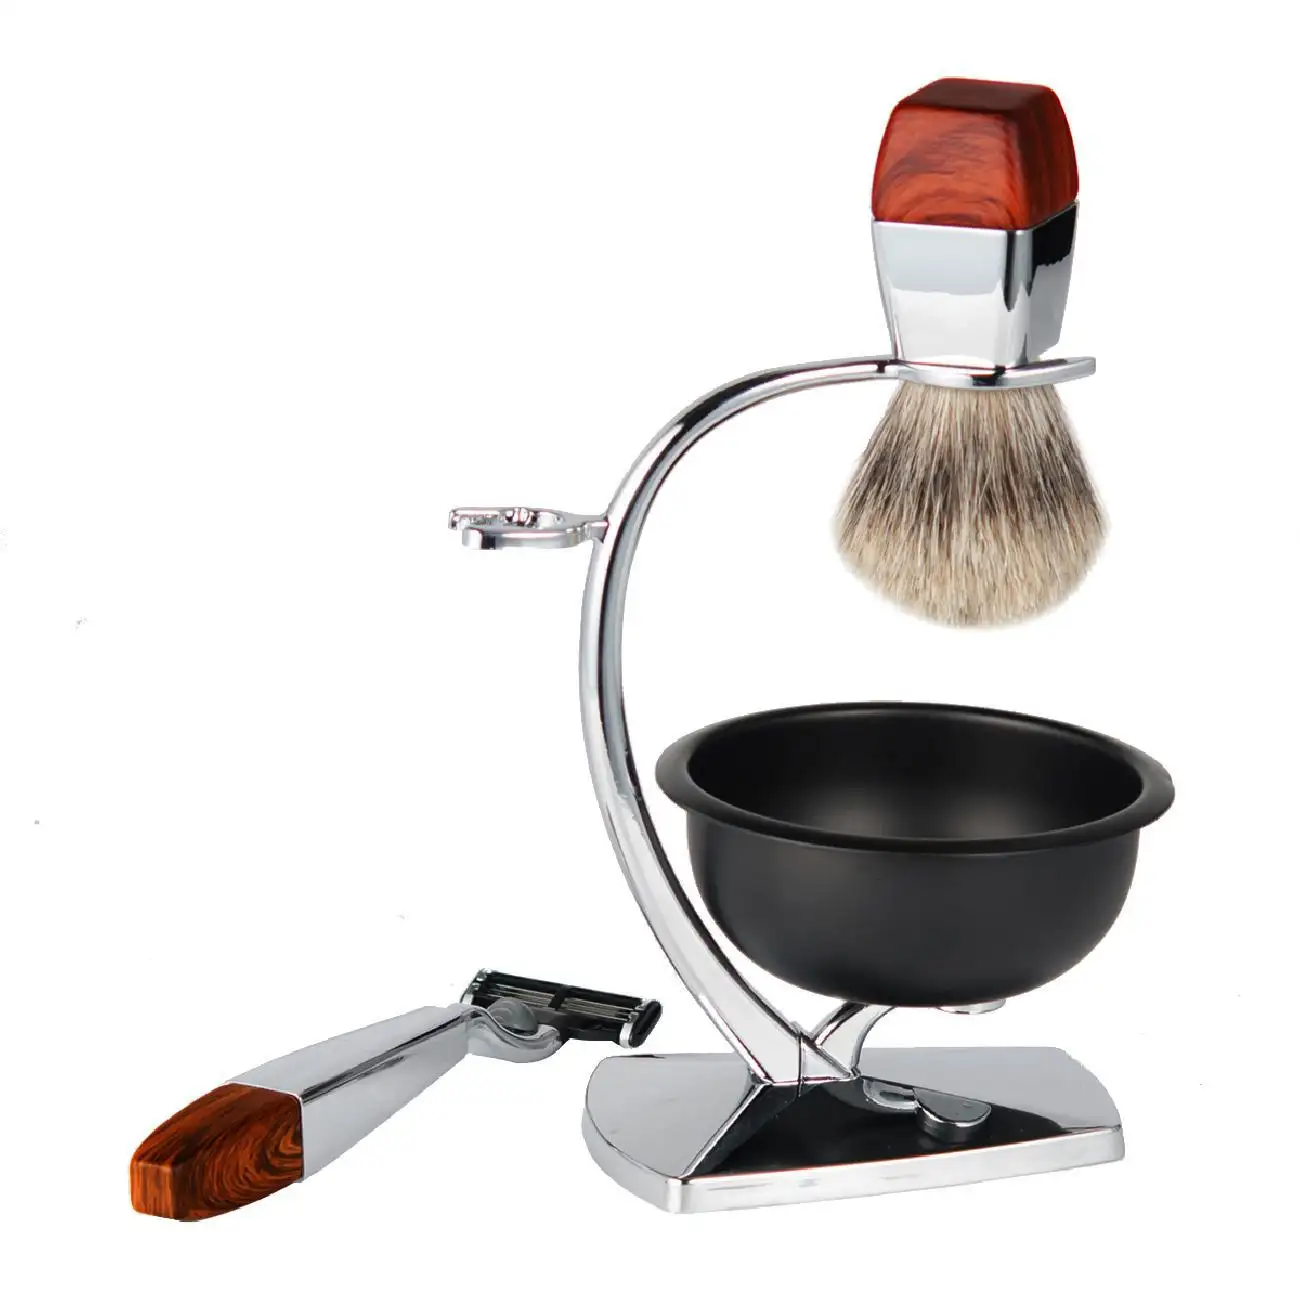 razor kits shaving cleaning brush metal shaving bowl grooming kit for shaving set for men